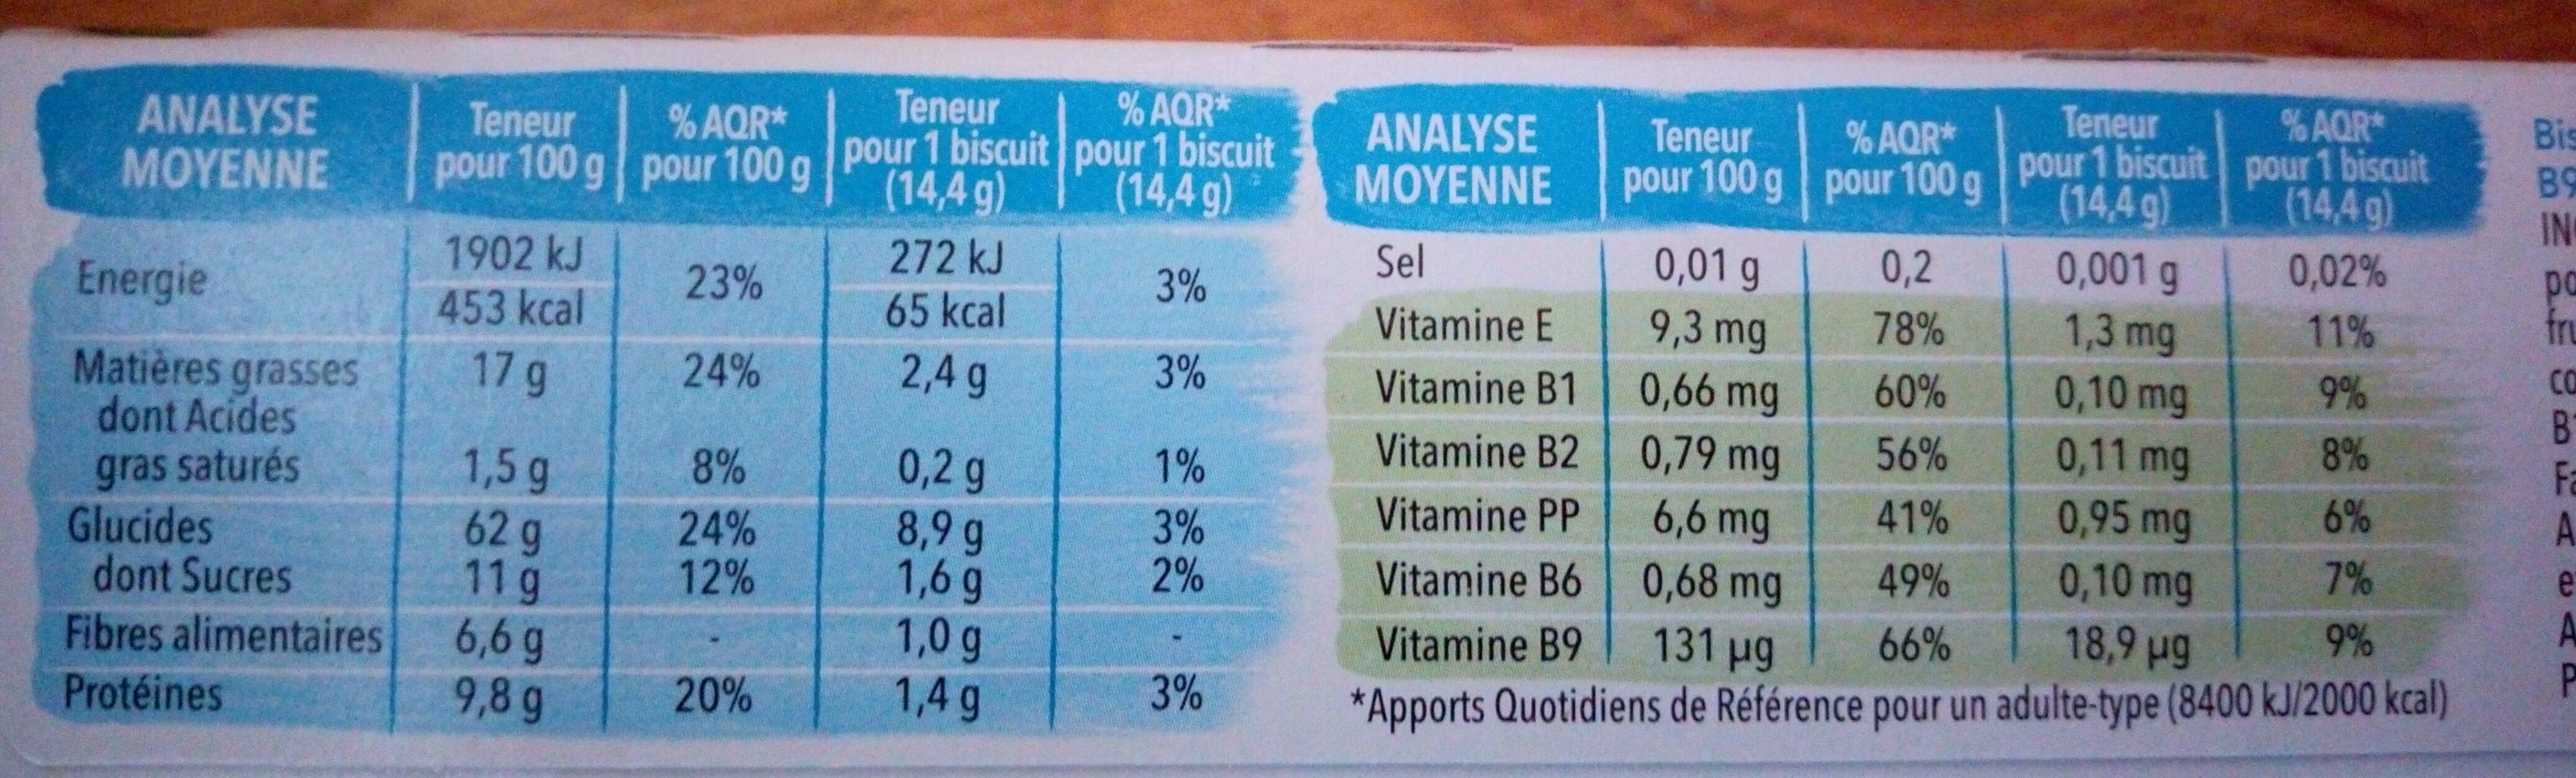 Pomme Noisette - Nutrition facts - fr